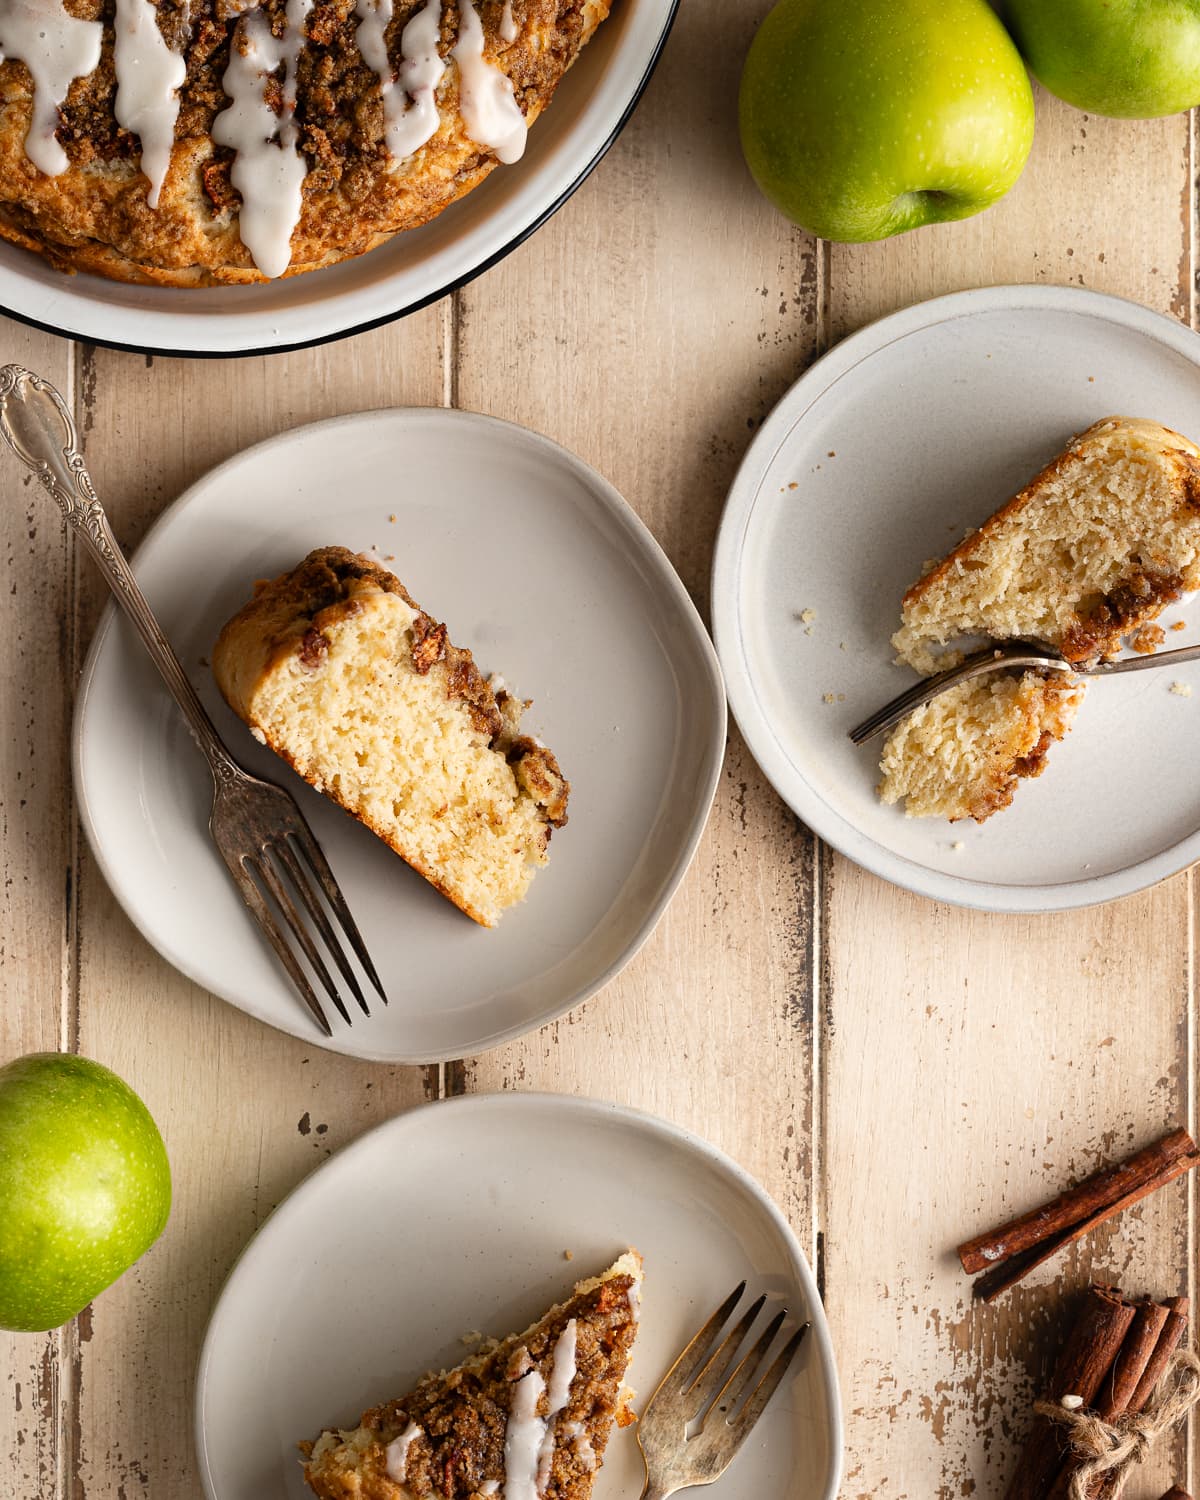 three slices of apple cake on dessert plates.